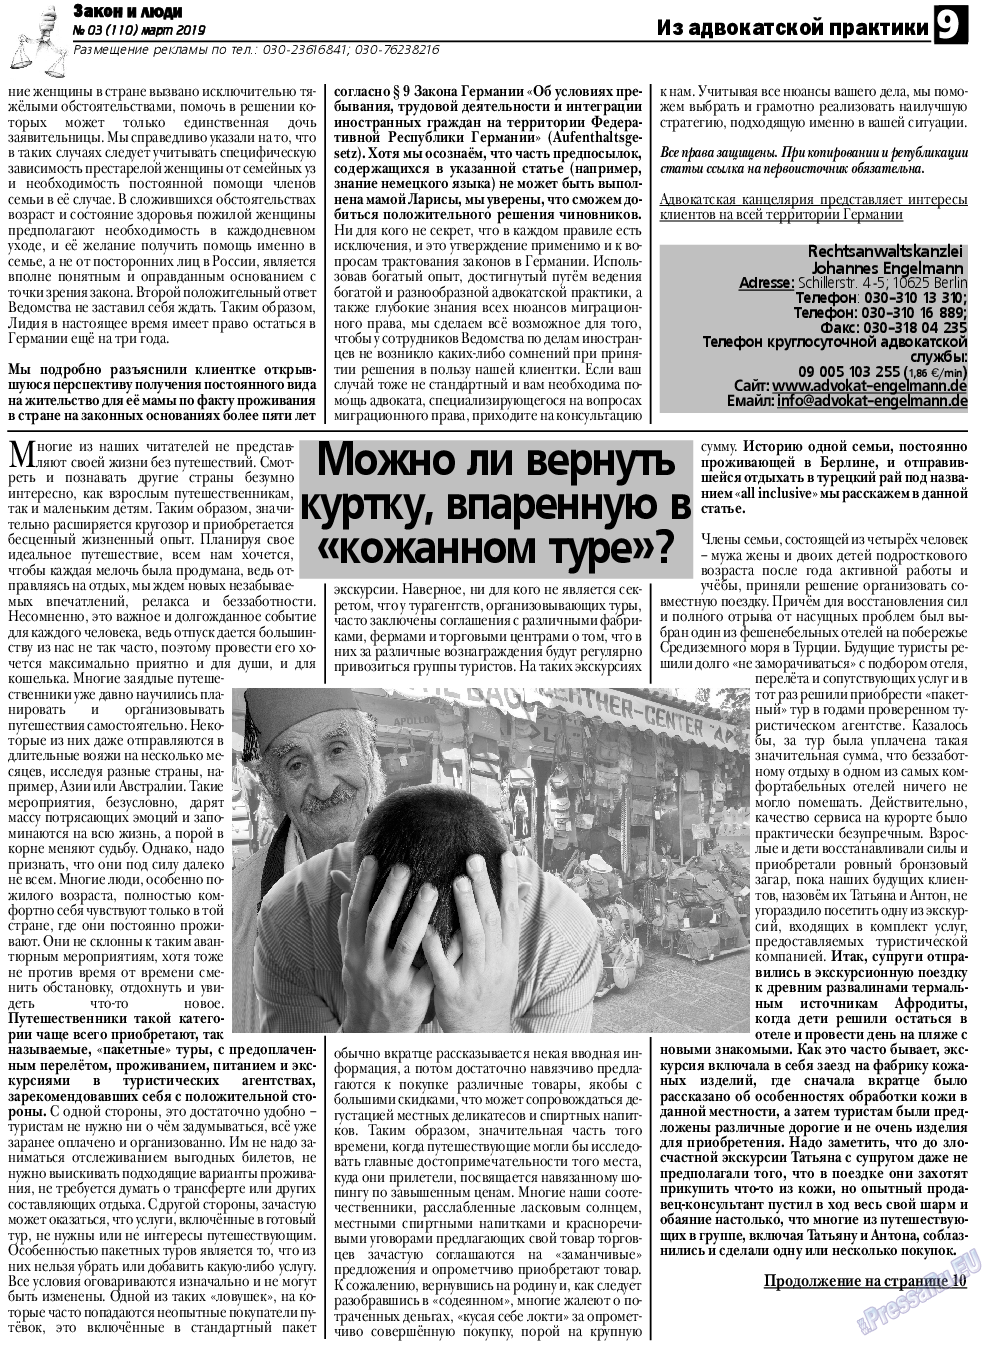 Закон и люди, газета. 2019 №3 стр.9